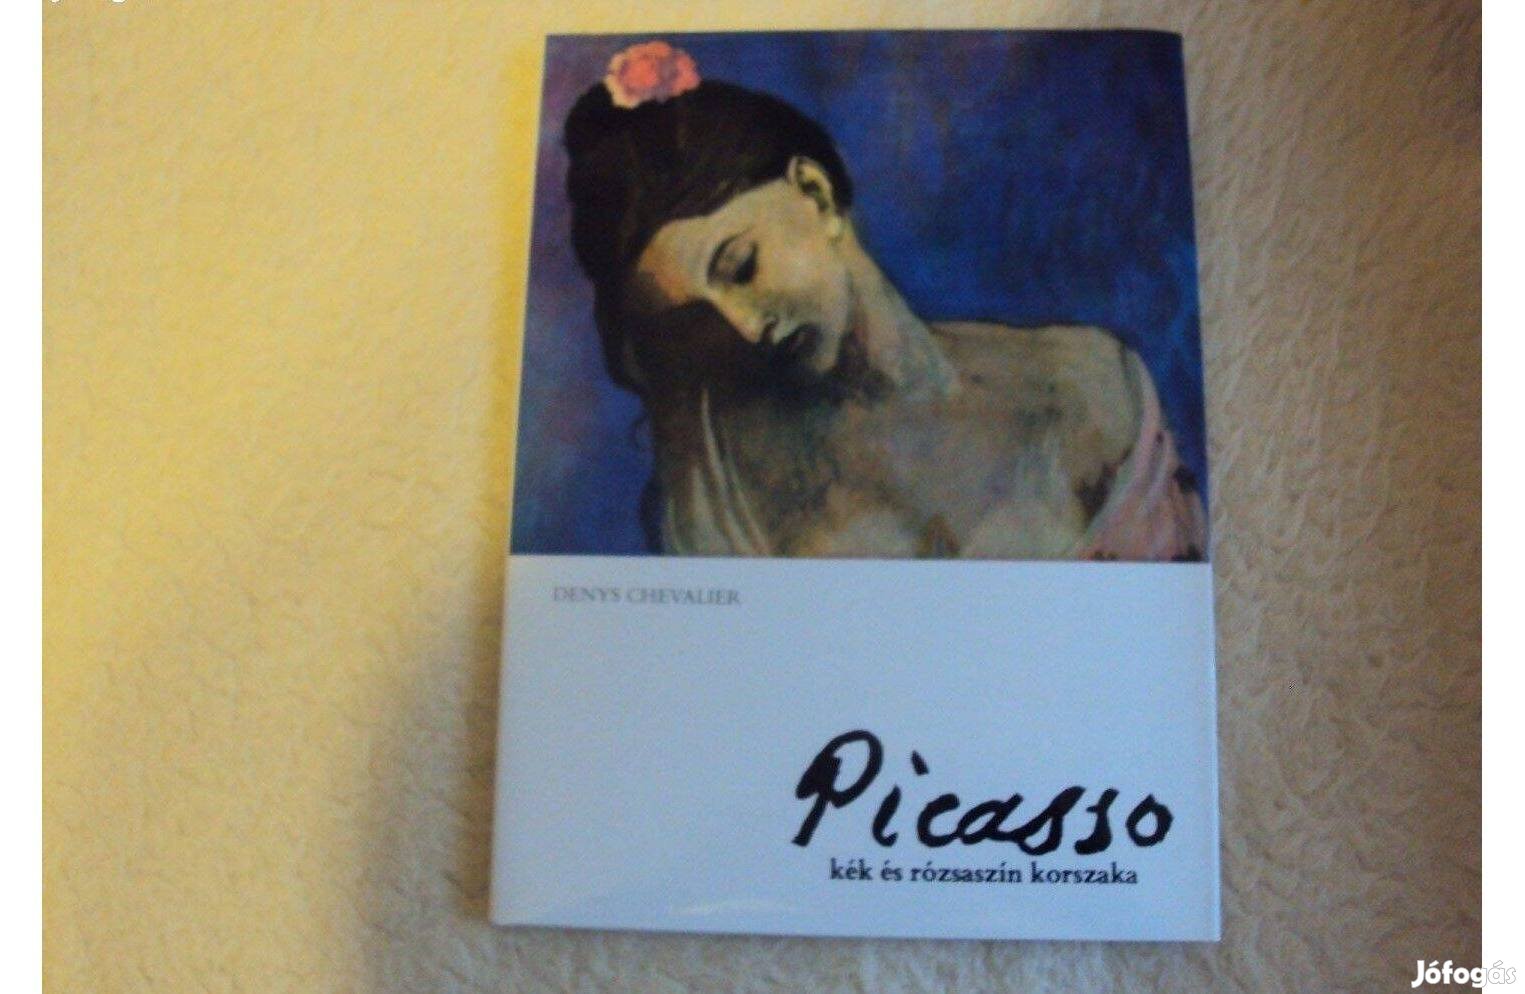 Denys Chevalier: Picasso kék és rózsaszín korszaka